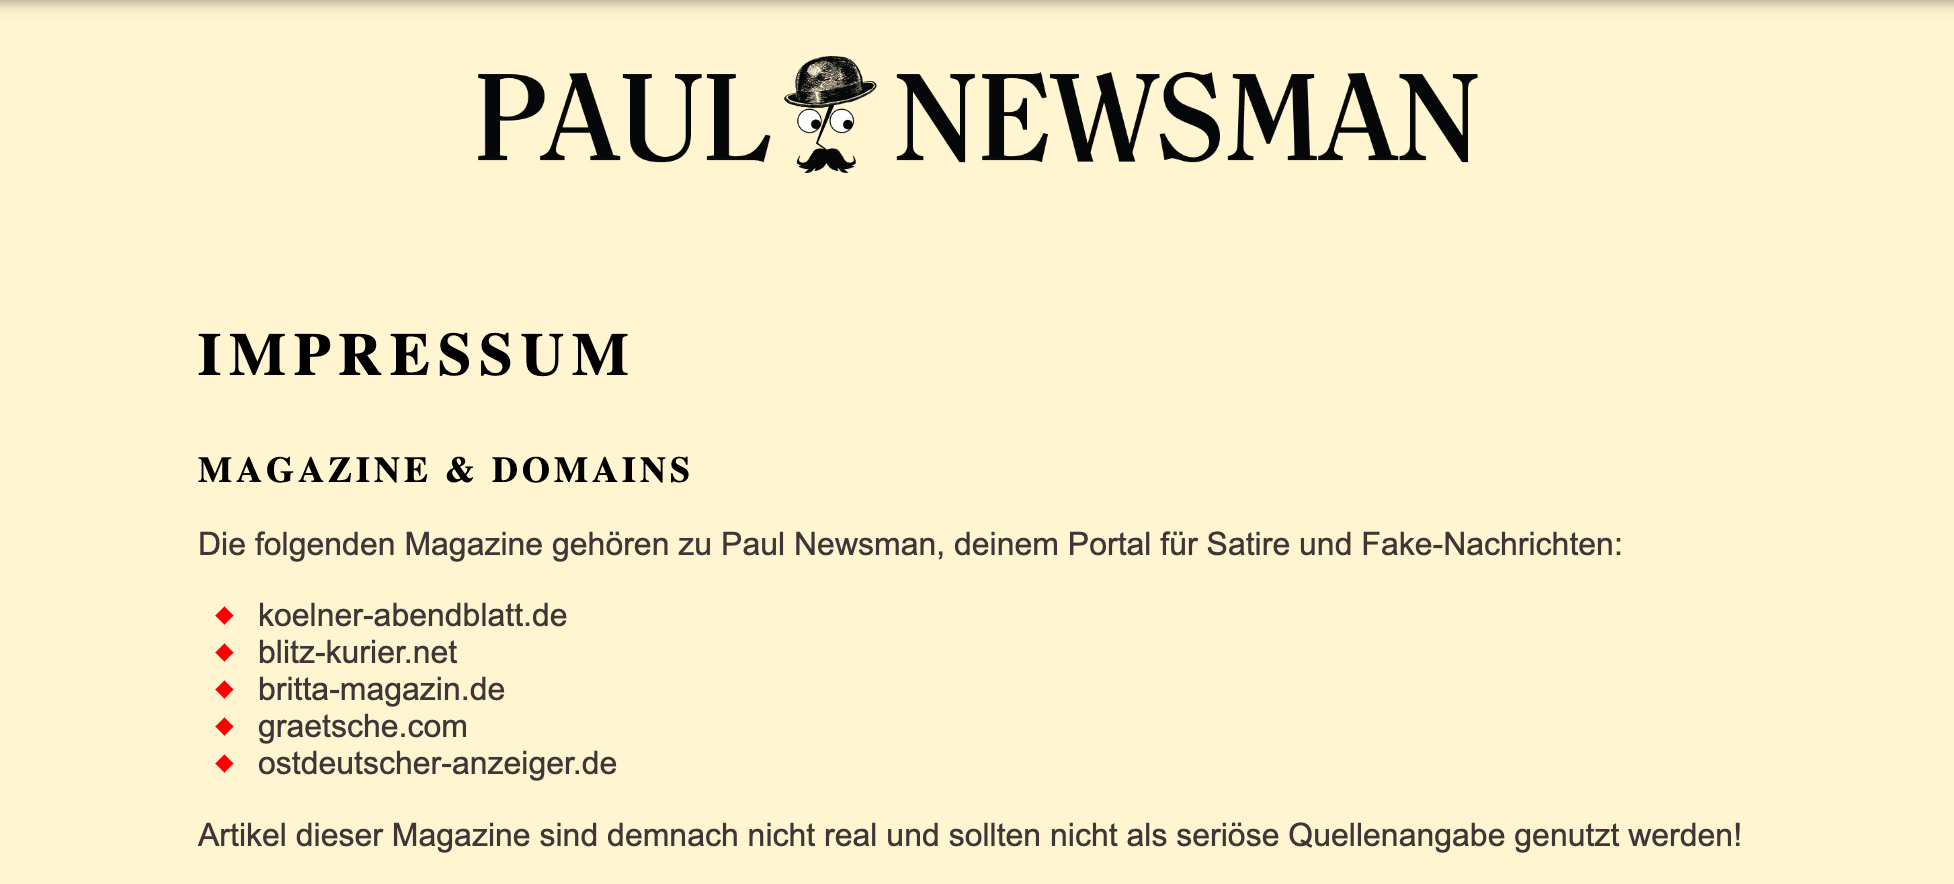 Paul Newsman ist eine Satire-Webseite.